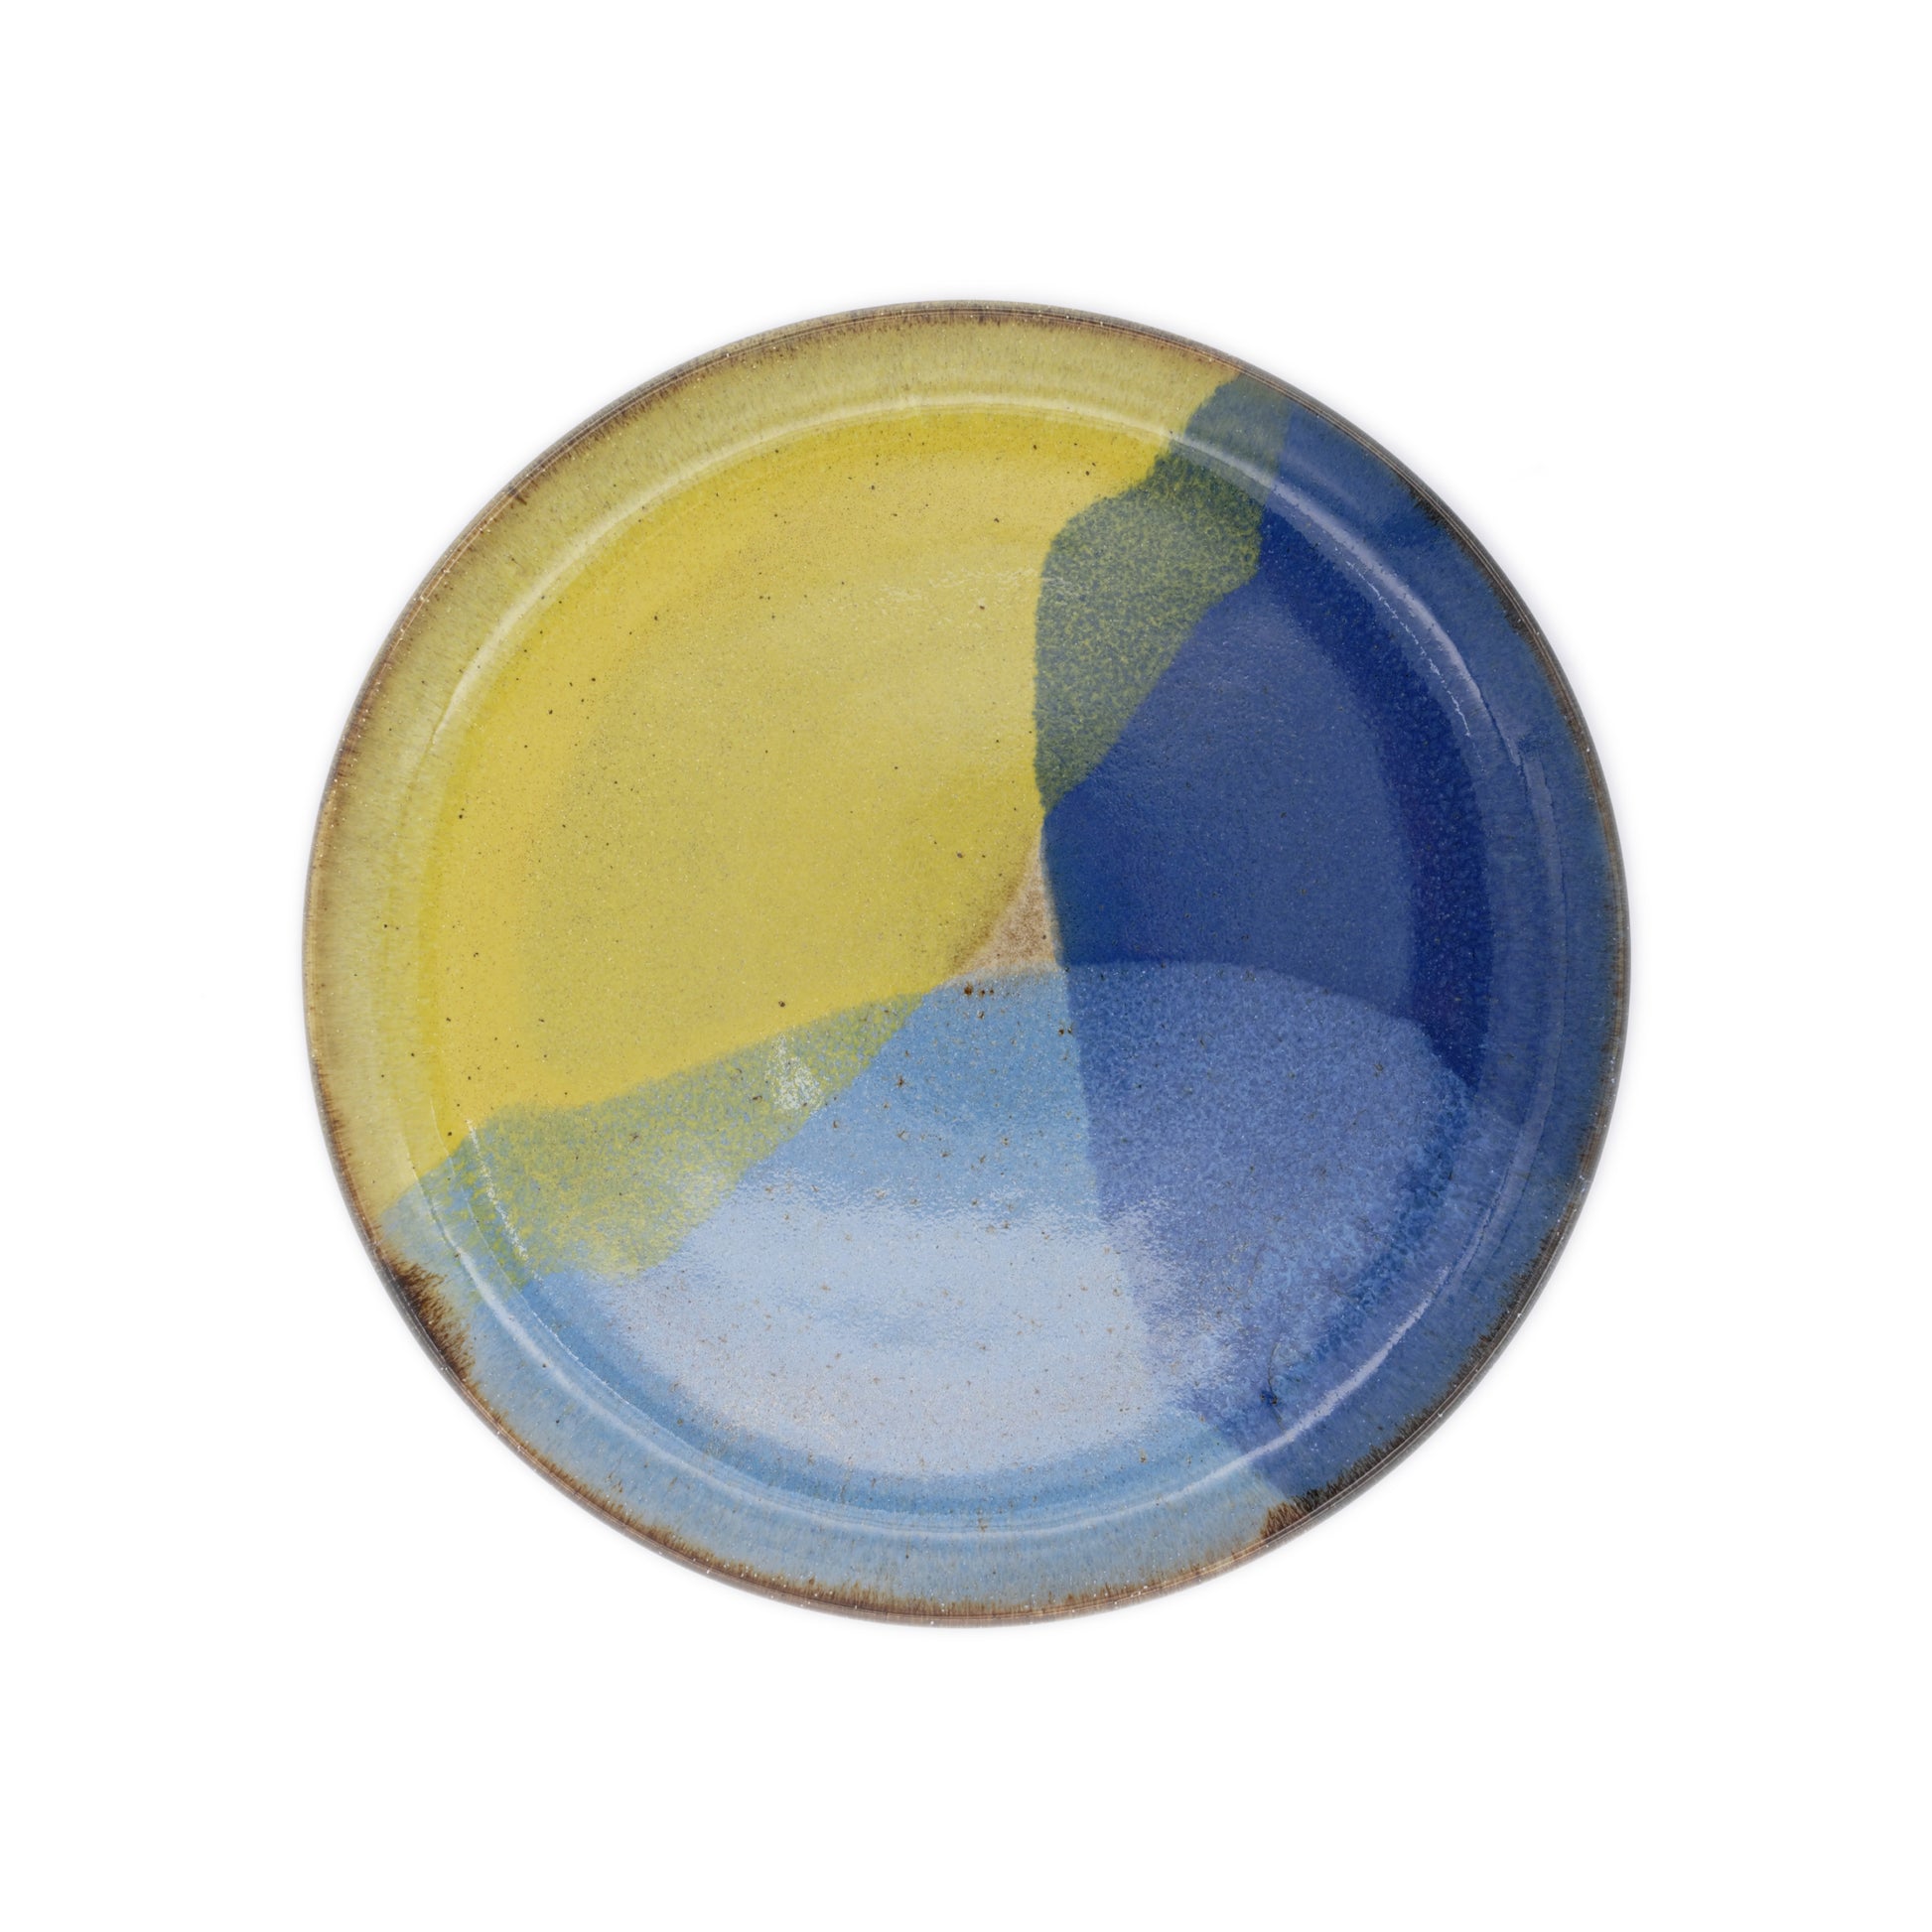 vue de dessus, assiette plate en grès naturel avec motif tricolore bleu profond, bleu ciel et jaune